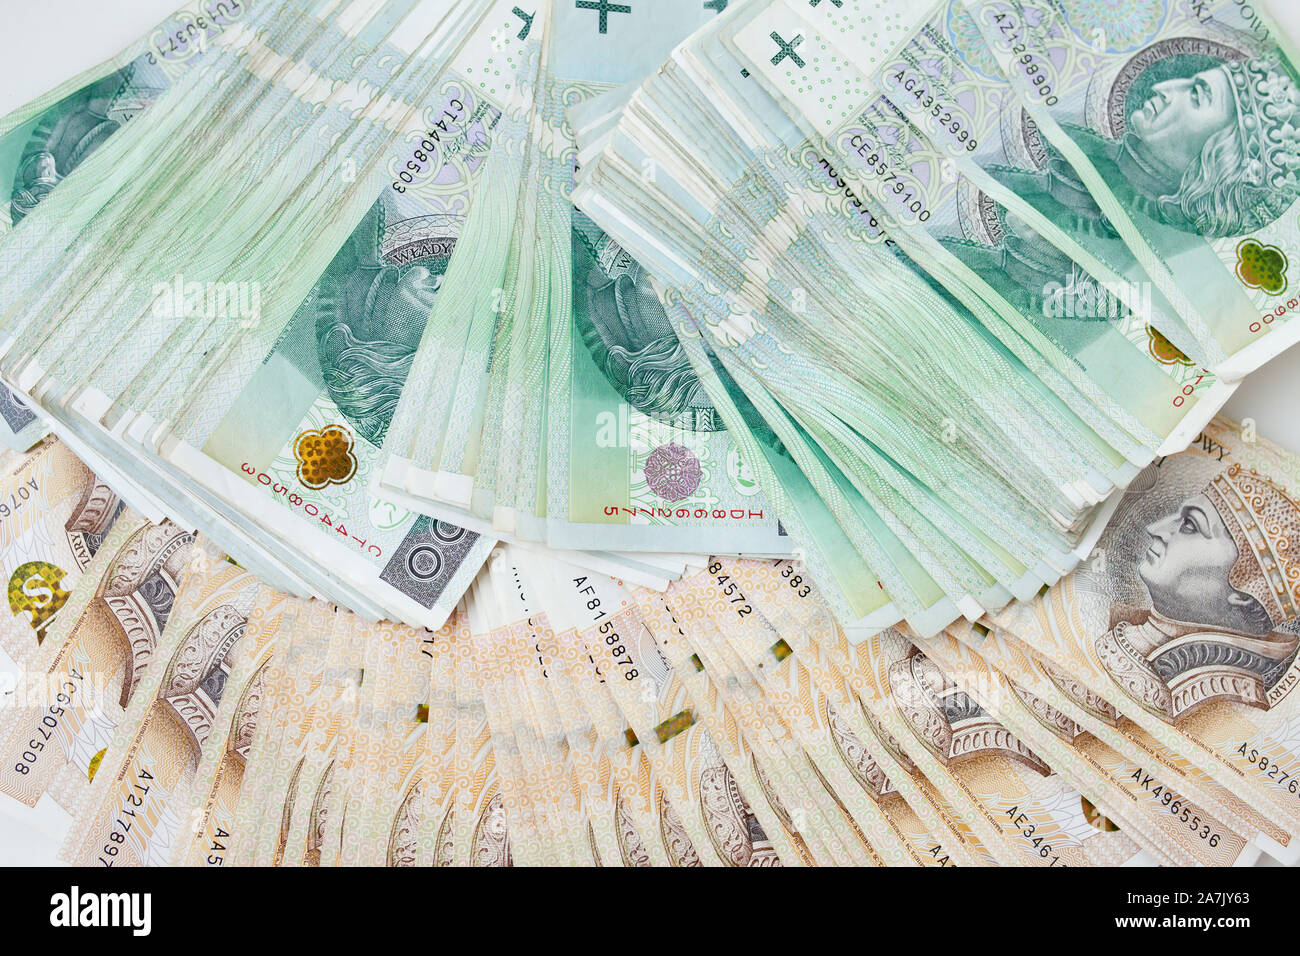 Beaucoup d'argent devise zloty polonais Banque D'Images